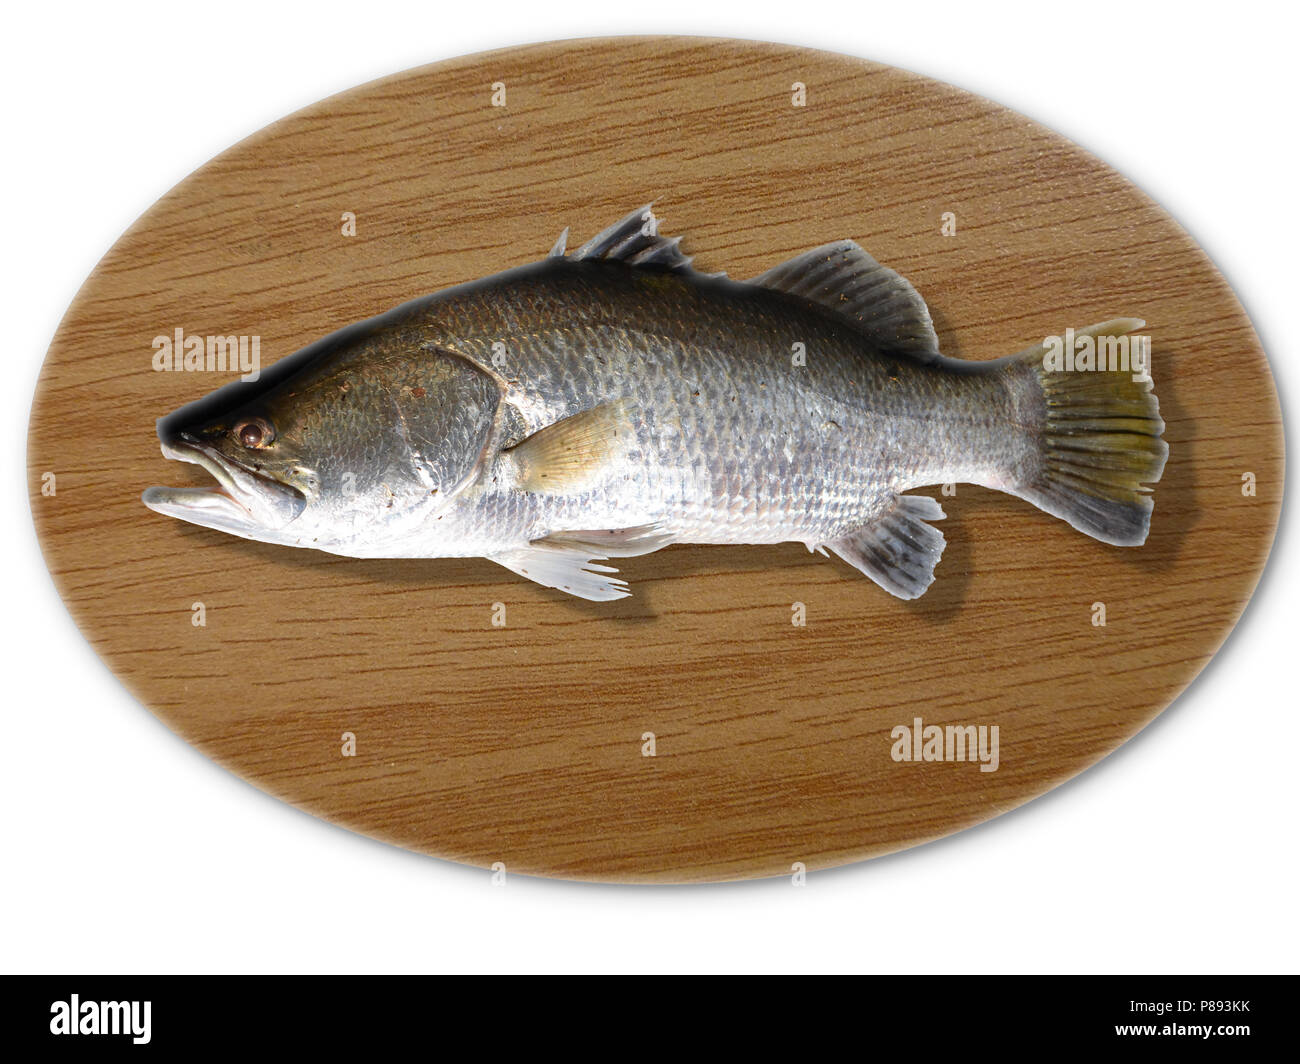 Mounted fish immagini e fotografie stock ad alta risoluzione - Alamy